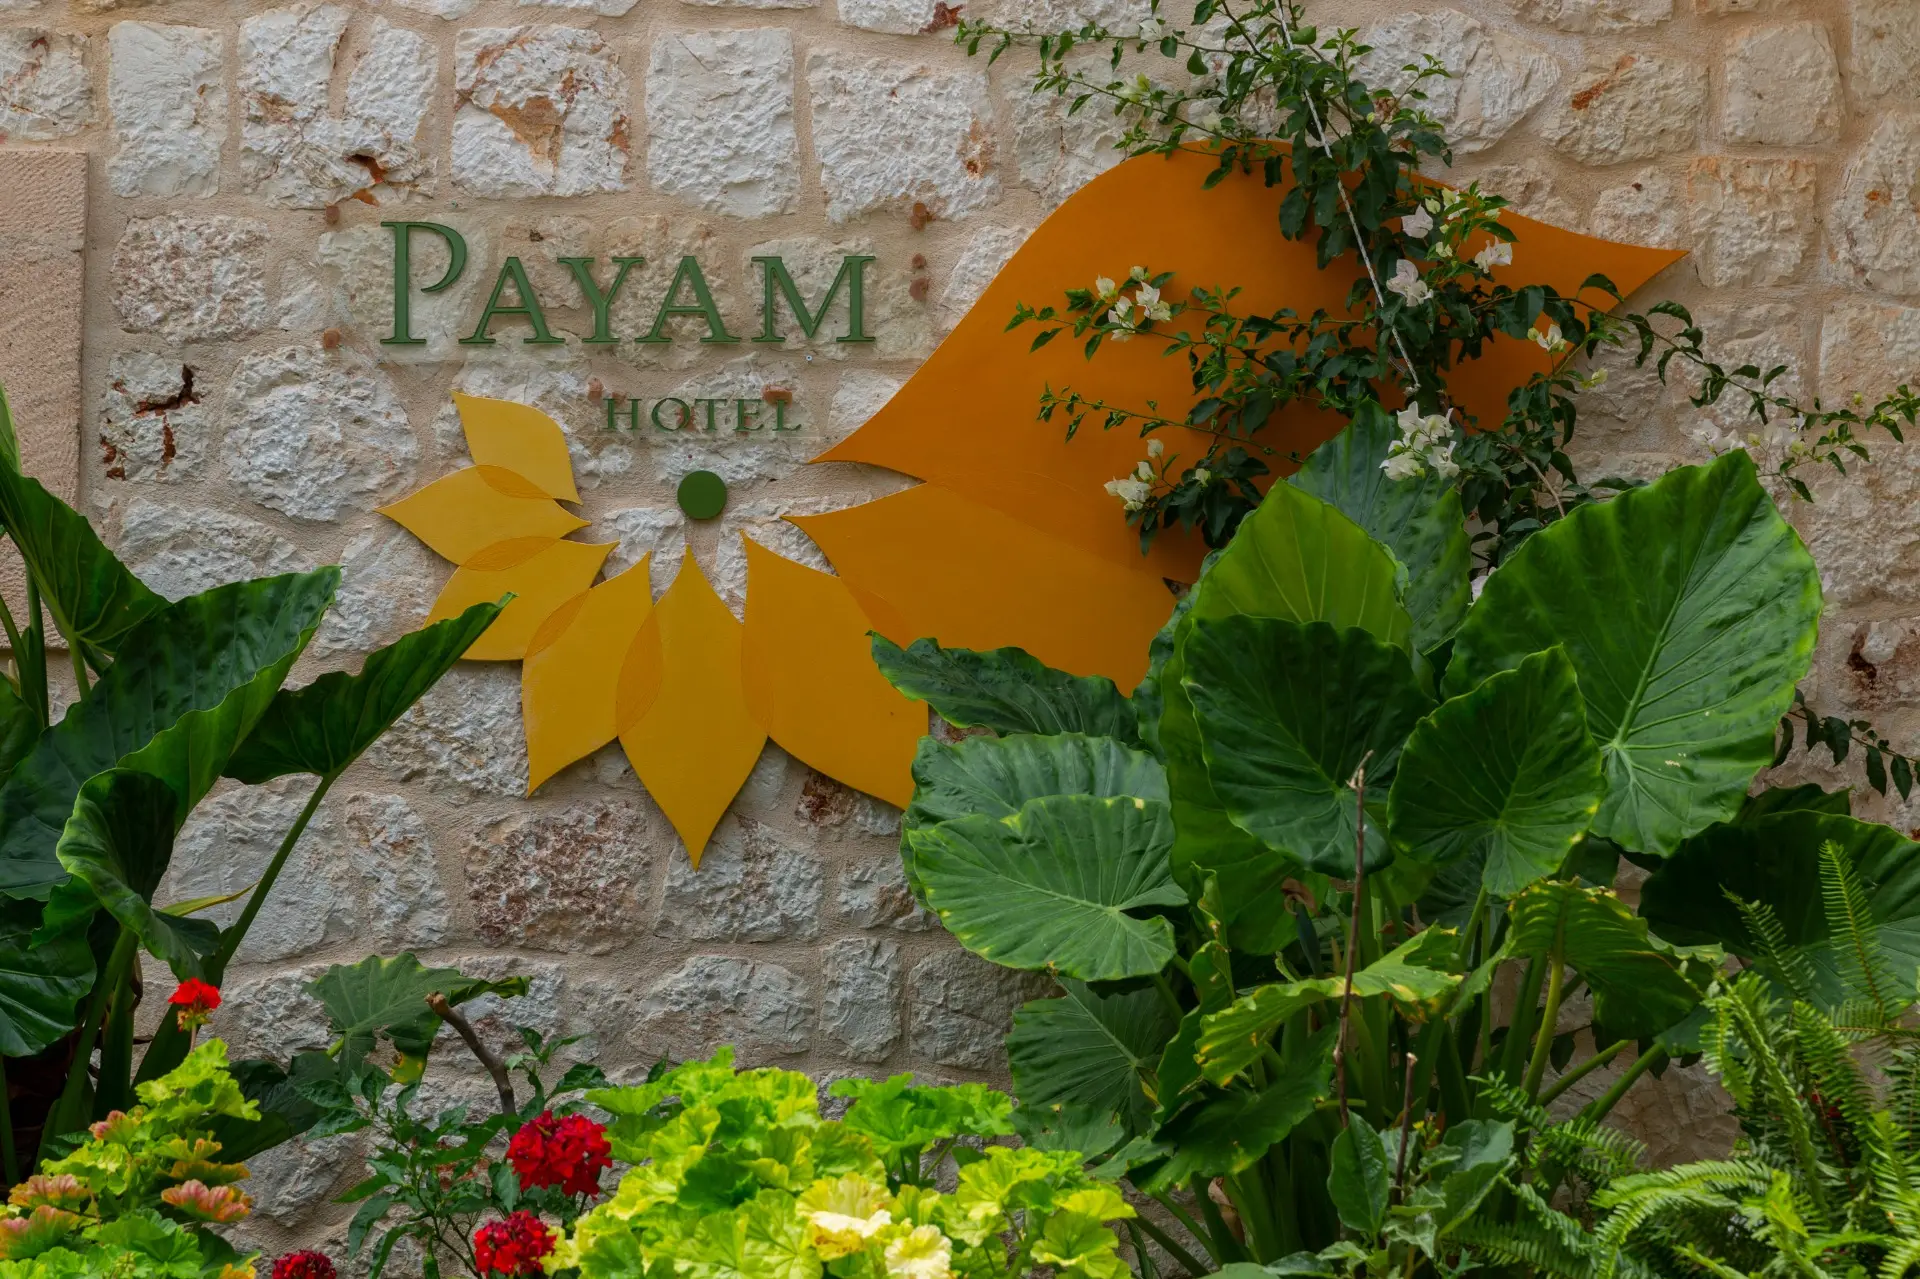 Payam Hotel